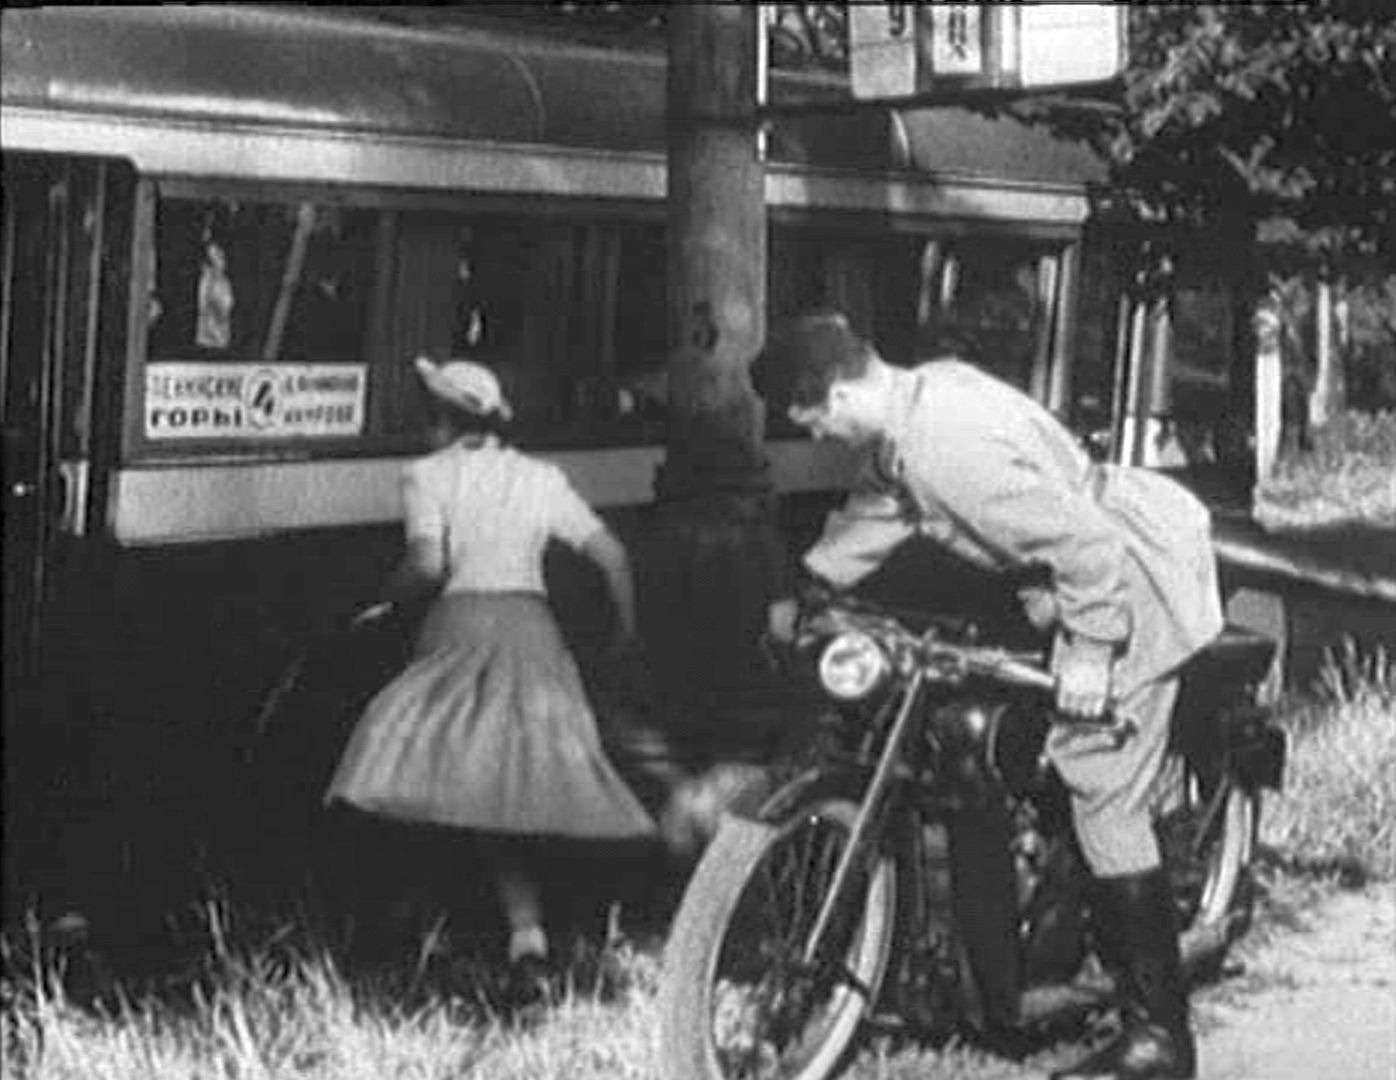 Кадр из довоенной комедии «Сердца четырех» («Мосфильм», 1939 год), одной из немногих лент отечественного кино, где в кадрах можно рассмотреть троллейбус. Обычно в объектив попадал автобус ЗиС-16. По этому адресу: http://glazo.livejournal.com/31350.html было проведено занятное расследование, где и в каких обстоятельствах проводилась съемка.